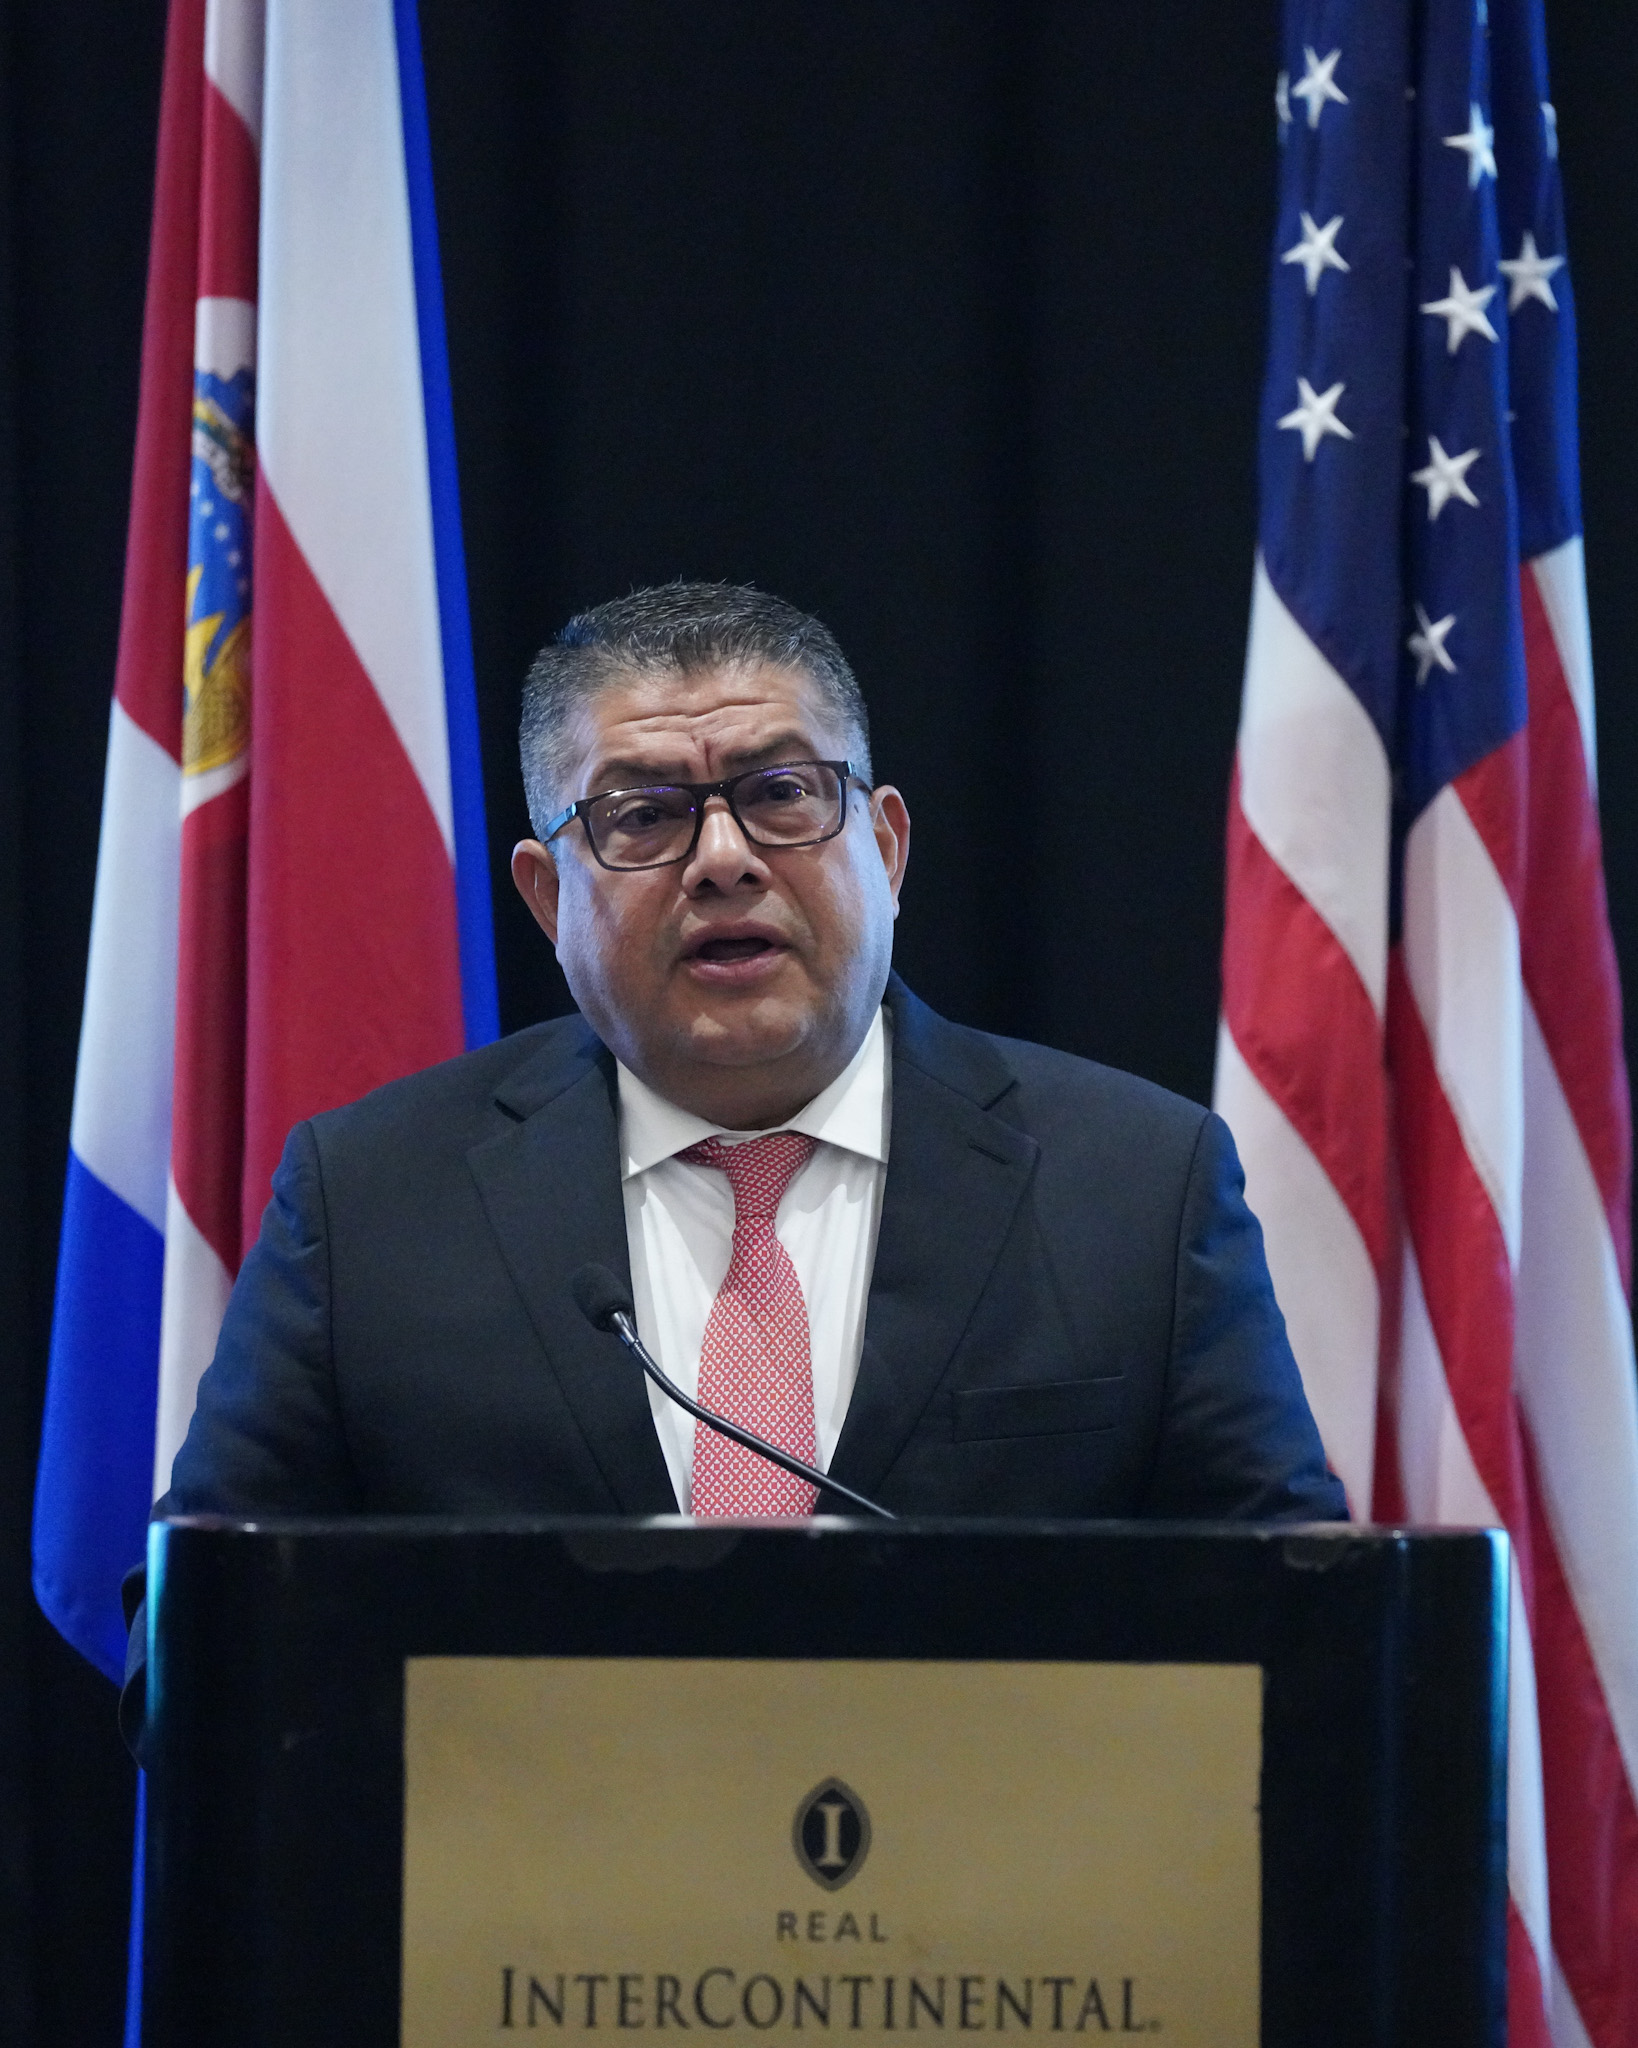 Costa Rica aposta na coordenação interagências para combater a criminalidade